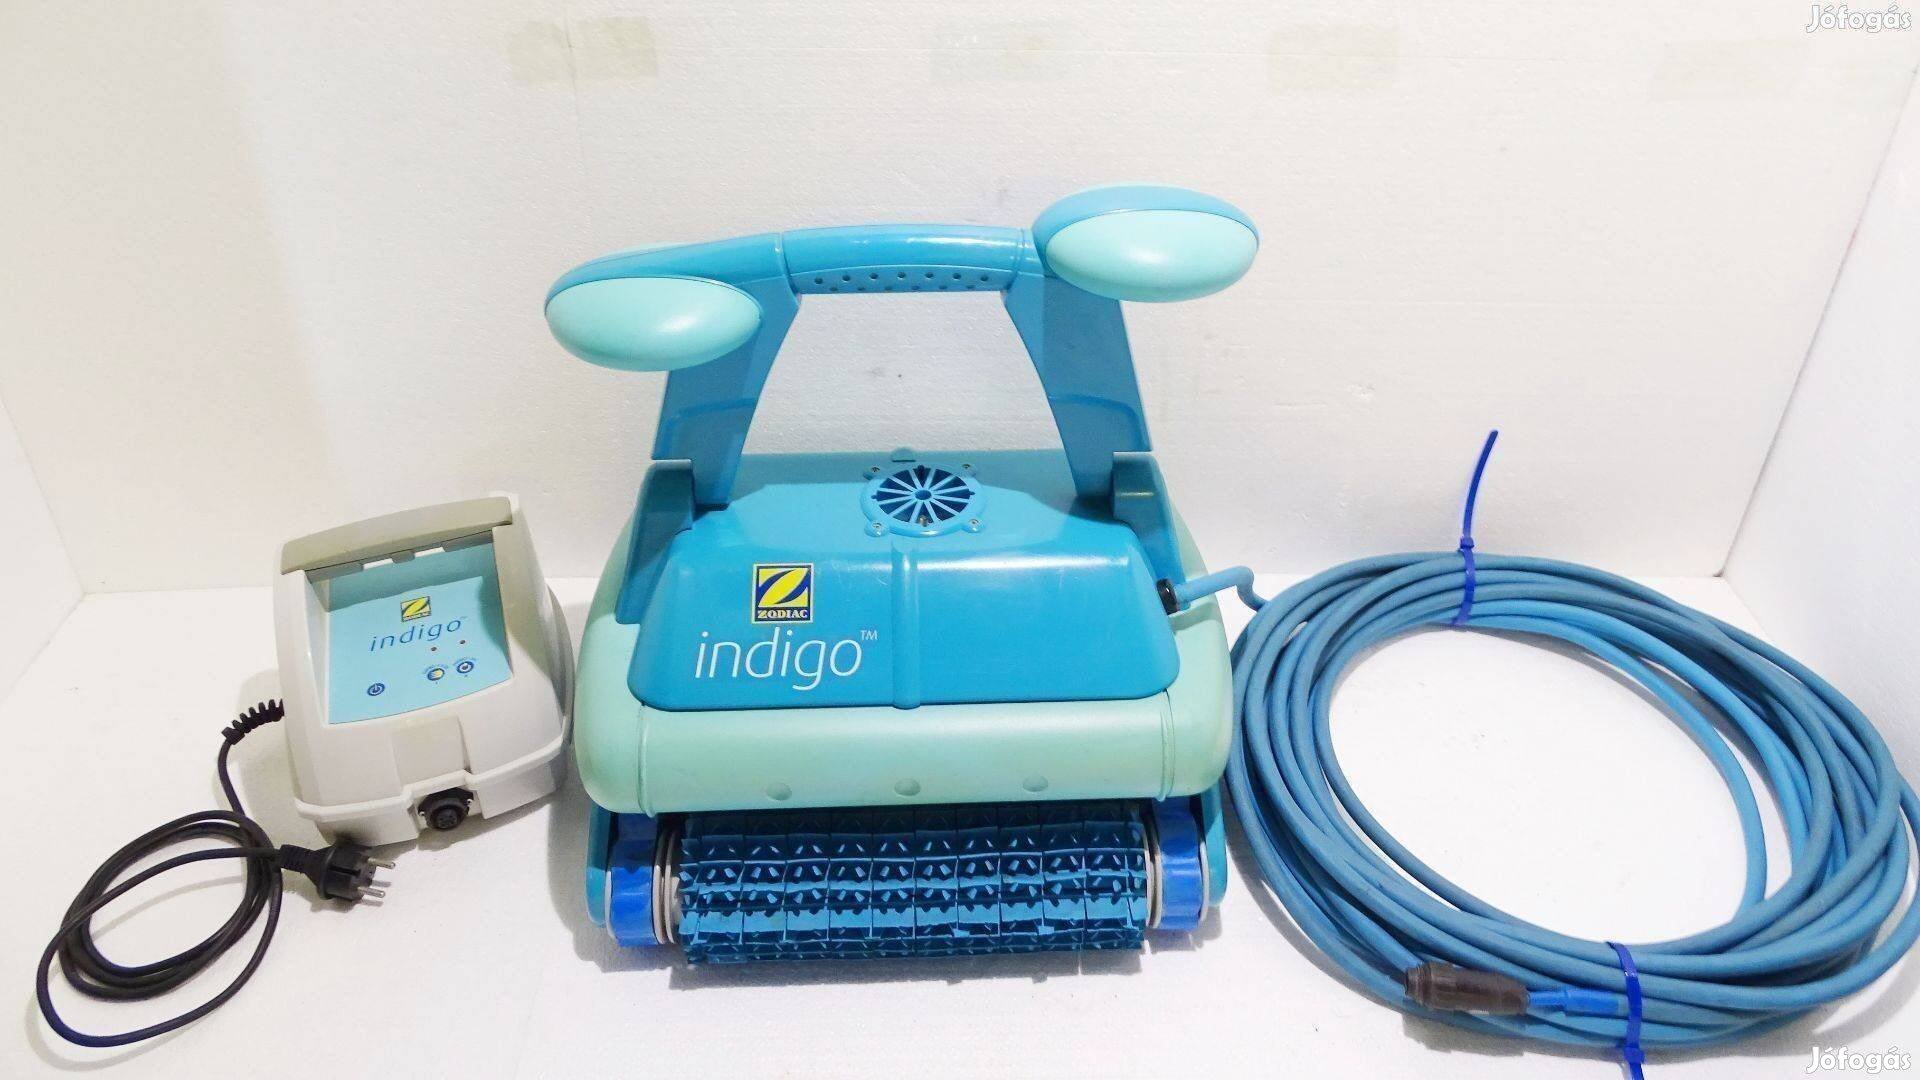 Zodiac Indigo automata medence porszívó robot takarító tisztító